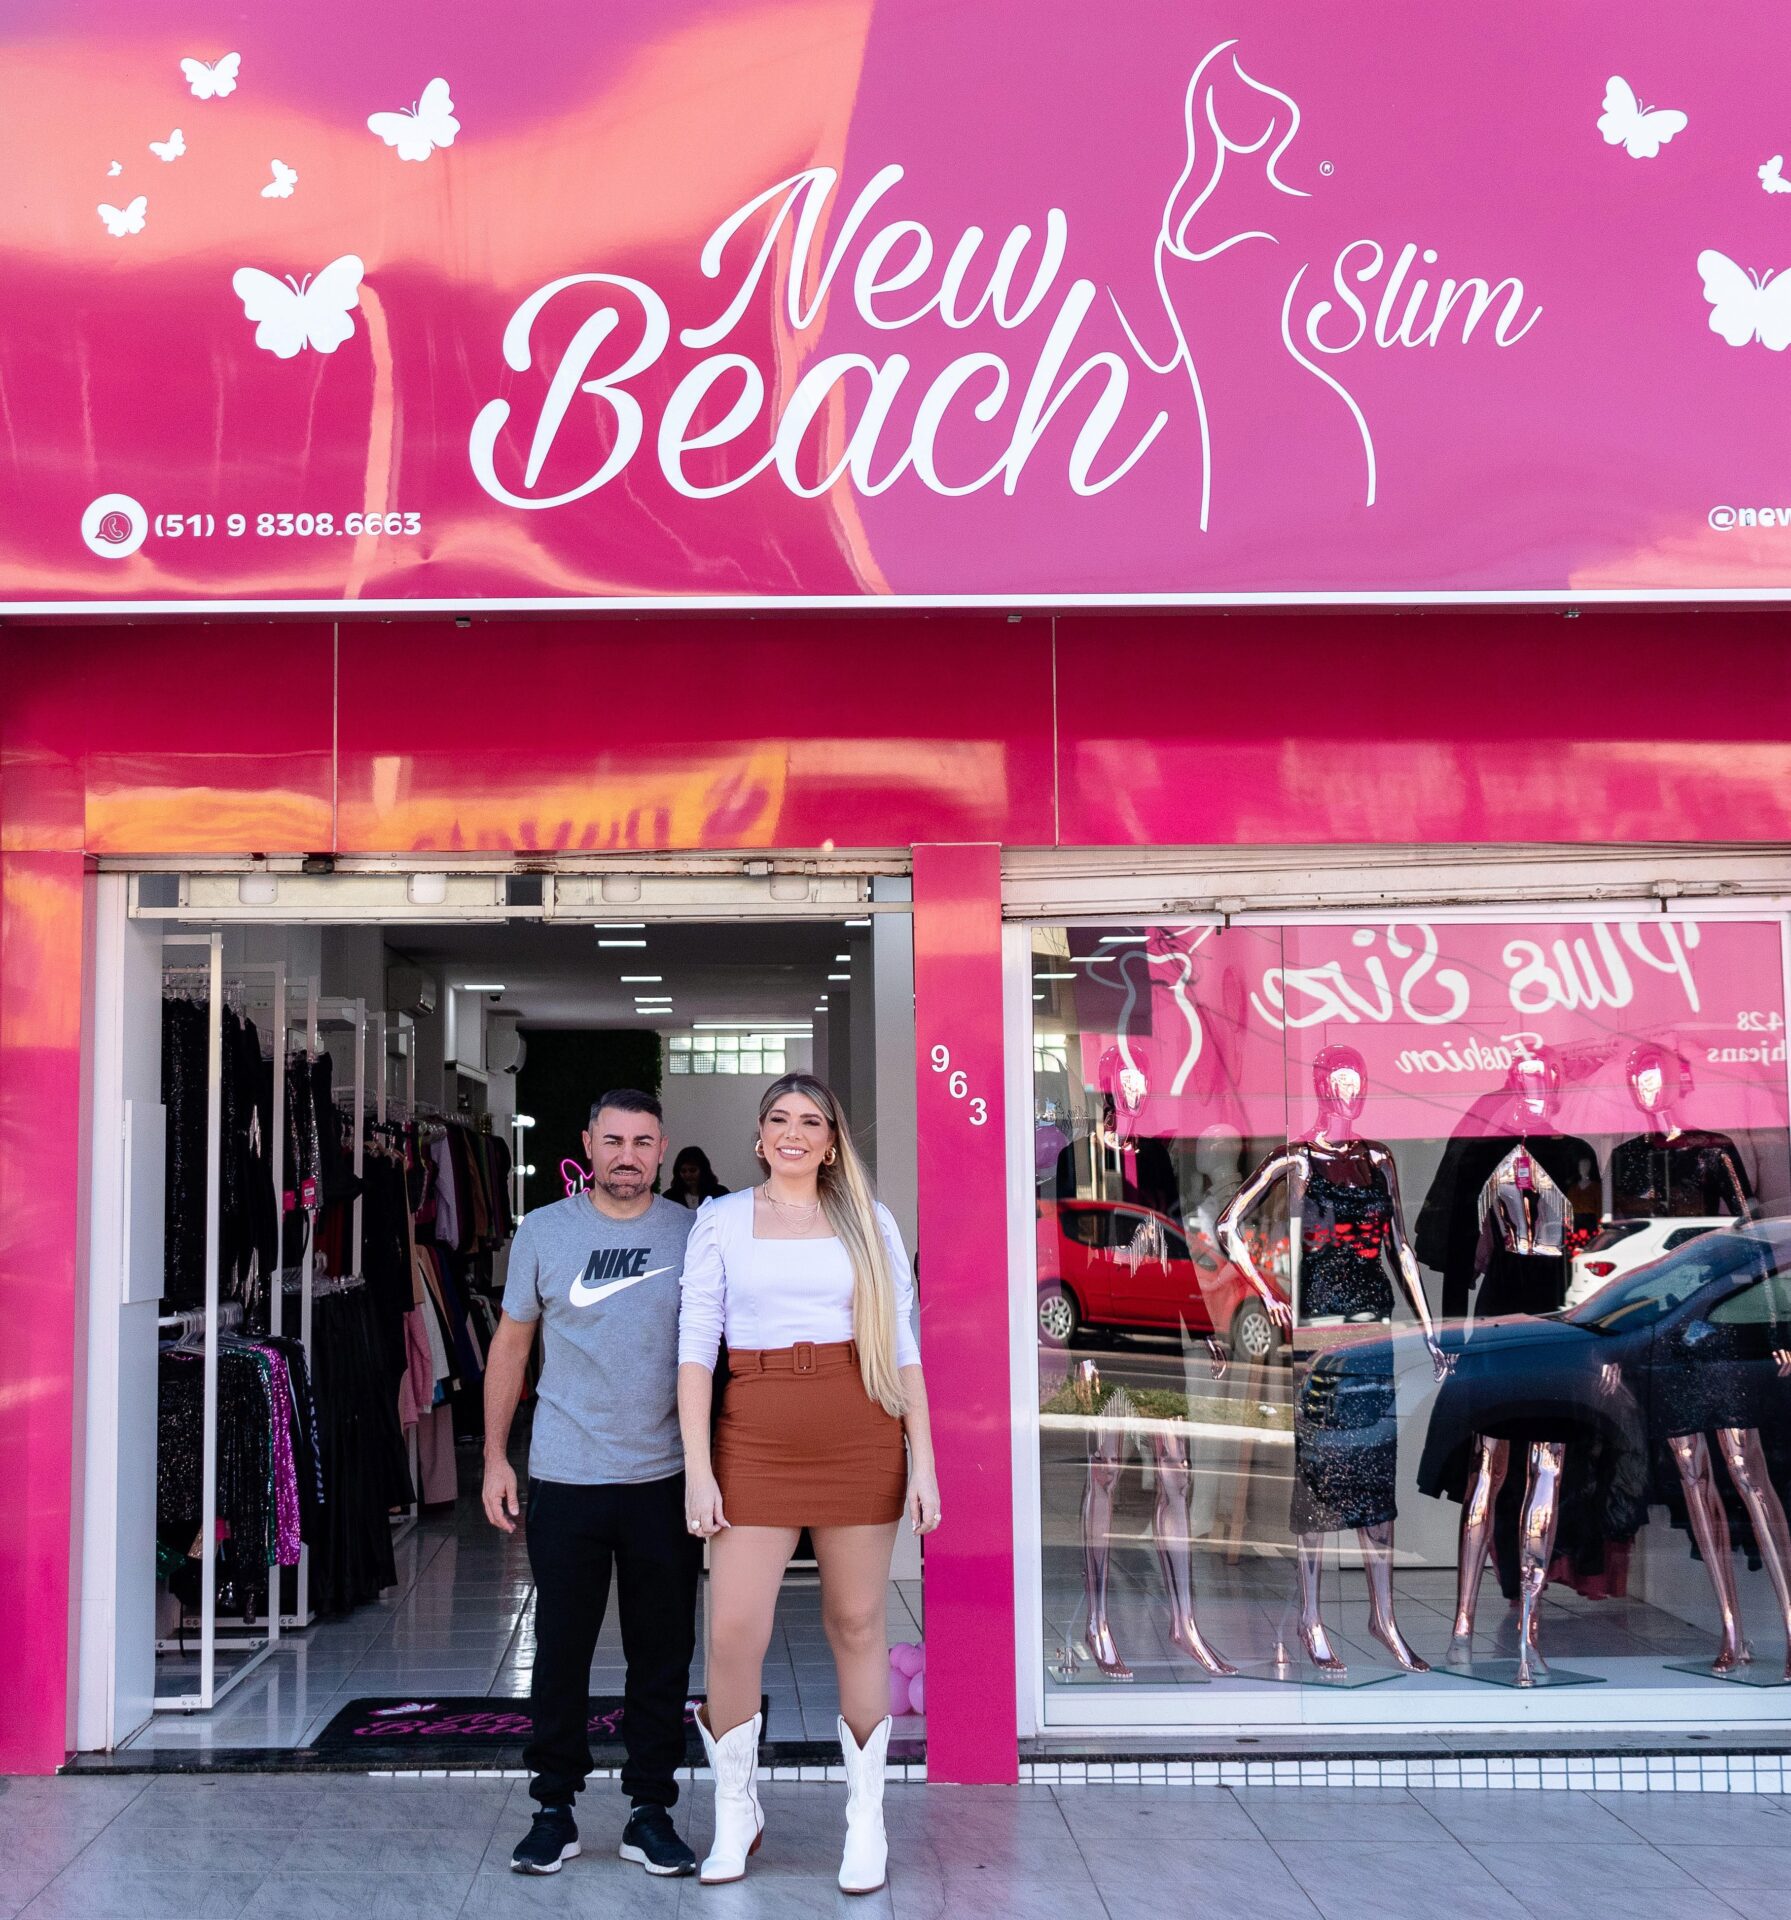 New Beach Slim fortalece em Gravataí a moda que empodera e traz felicidade